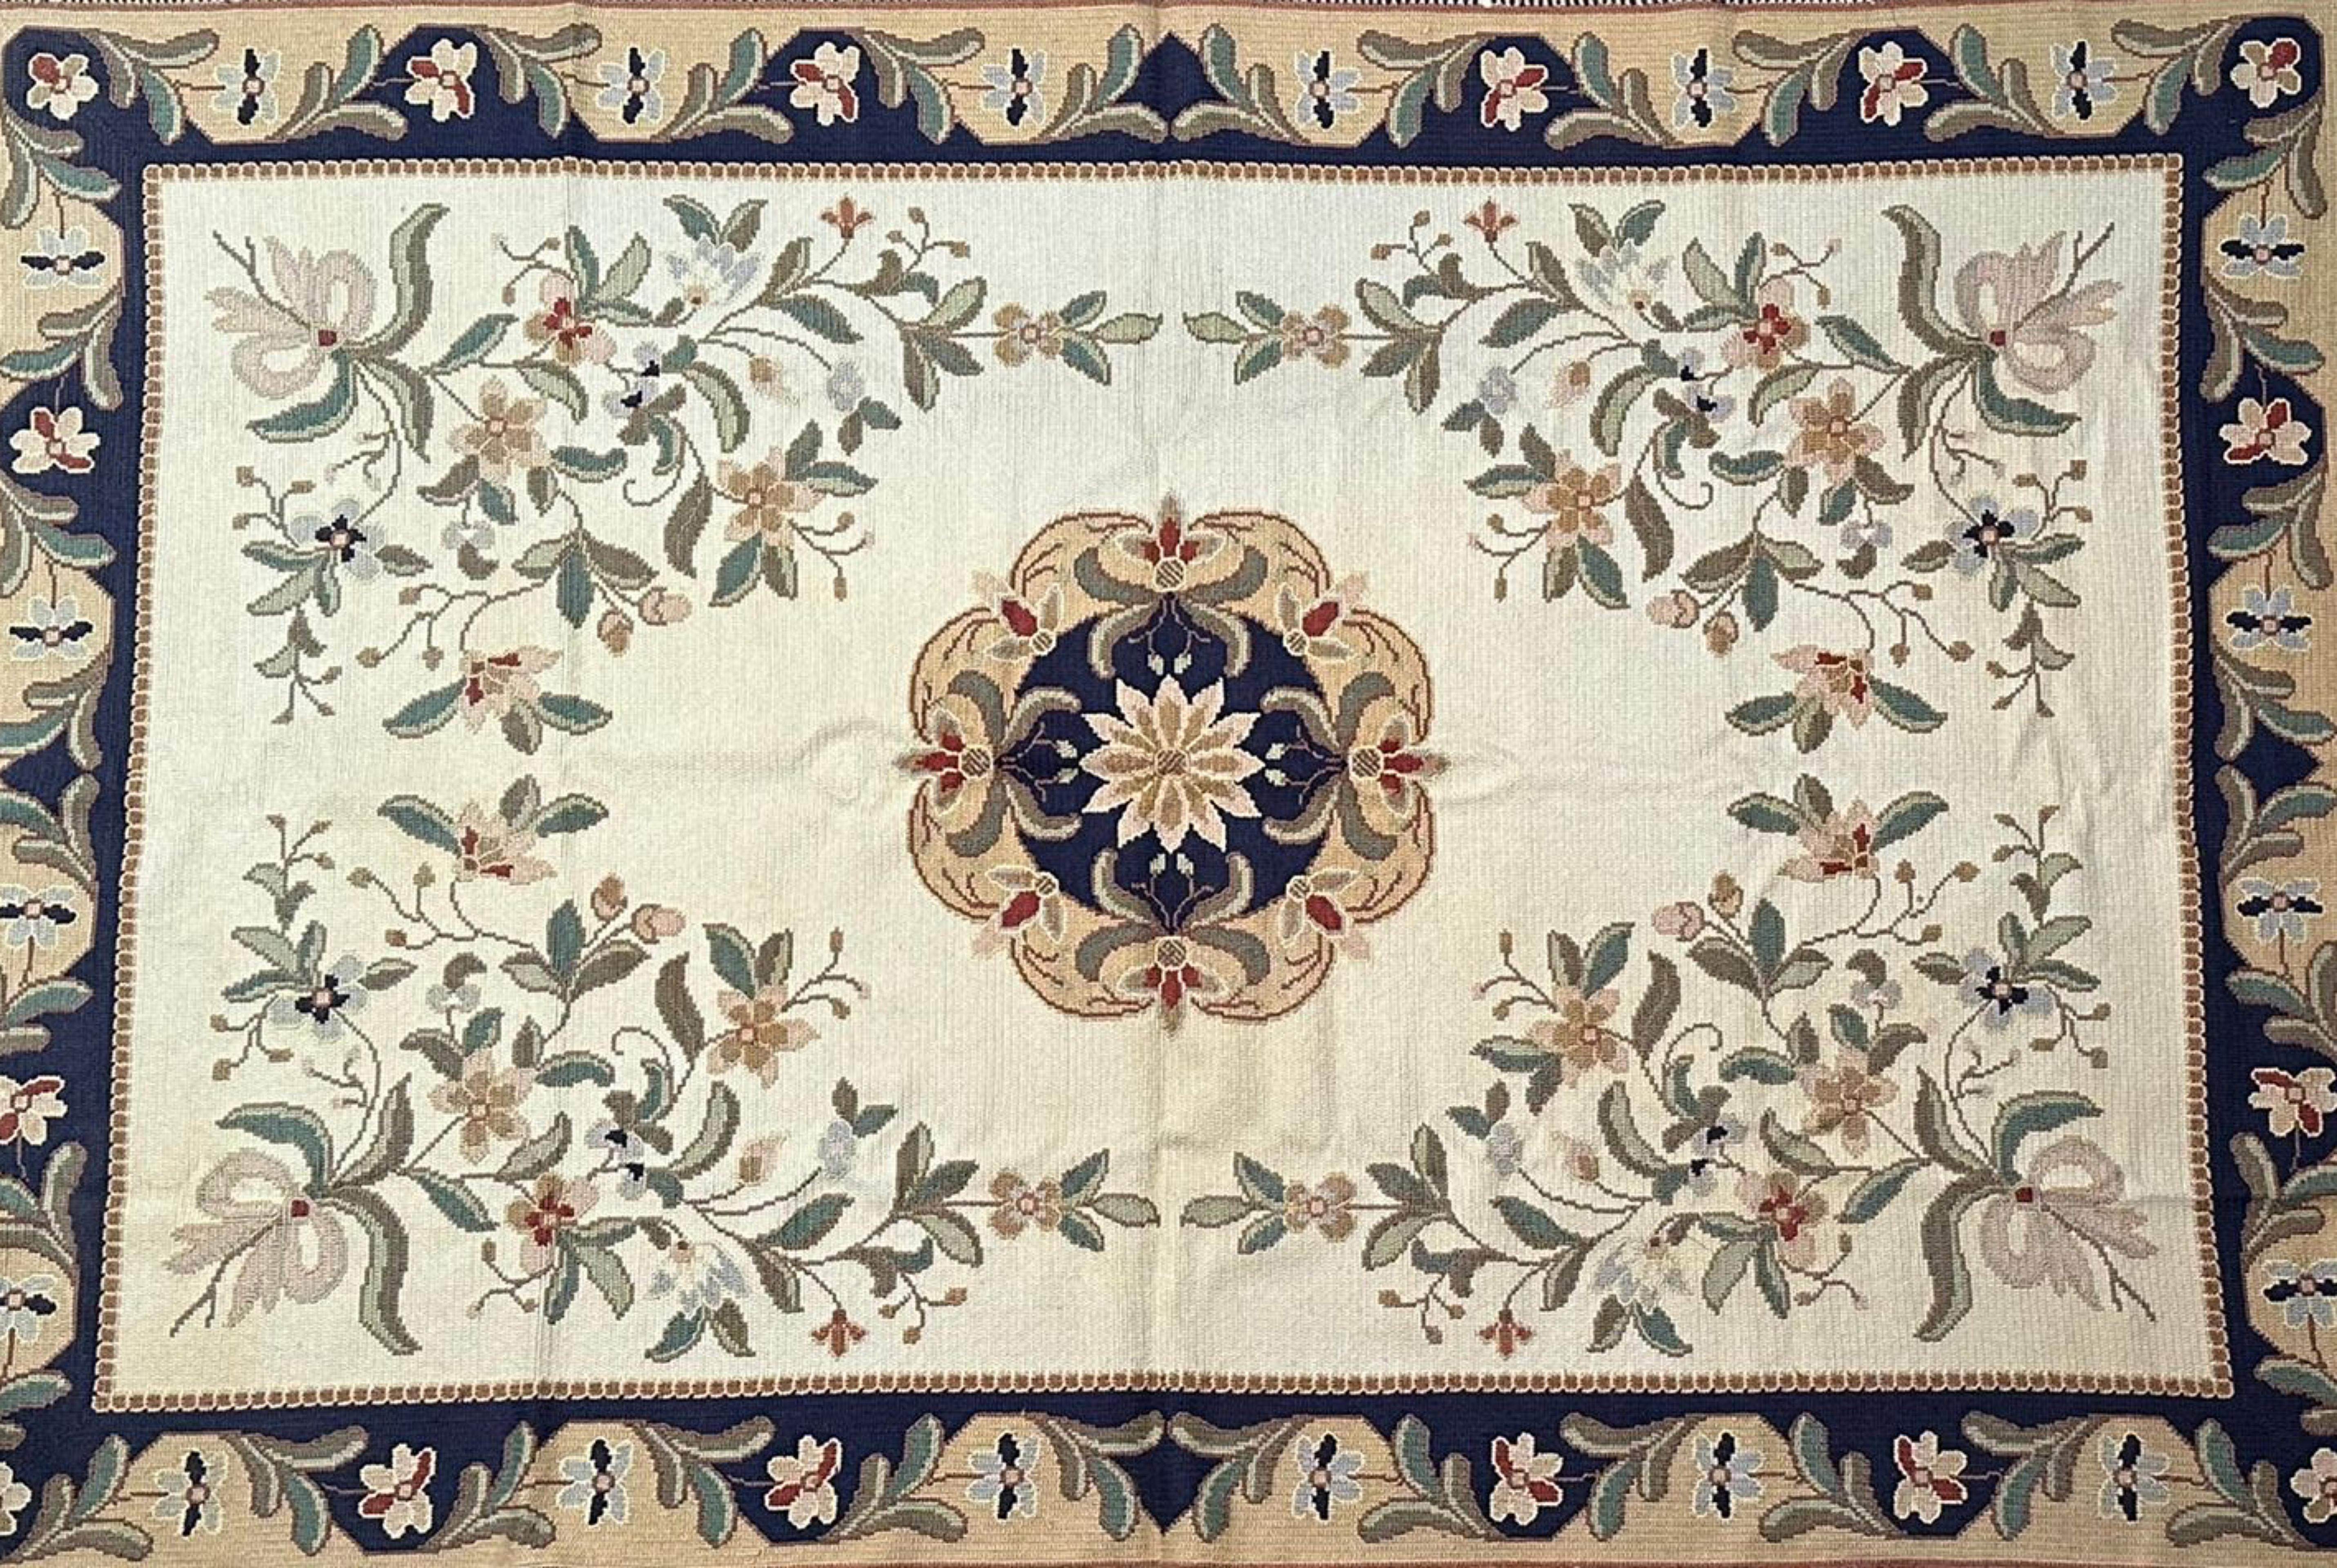 Schöner portugiesischer Teppich „ Arraiolos“ aus dem 20. Jahrhundert
handgefertigt in Wolle
297cm x 200cm
neuwertig